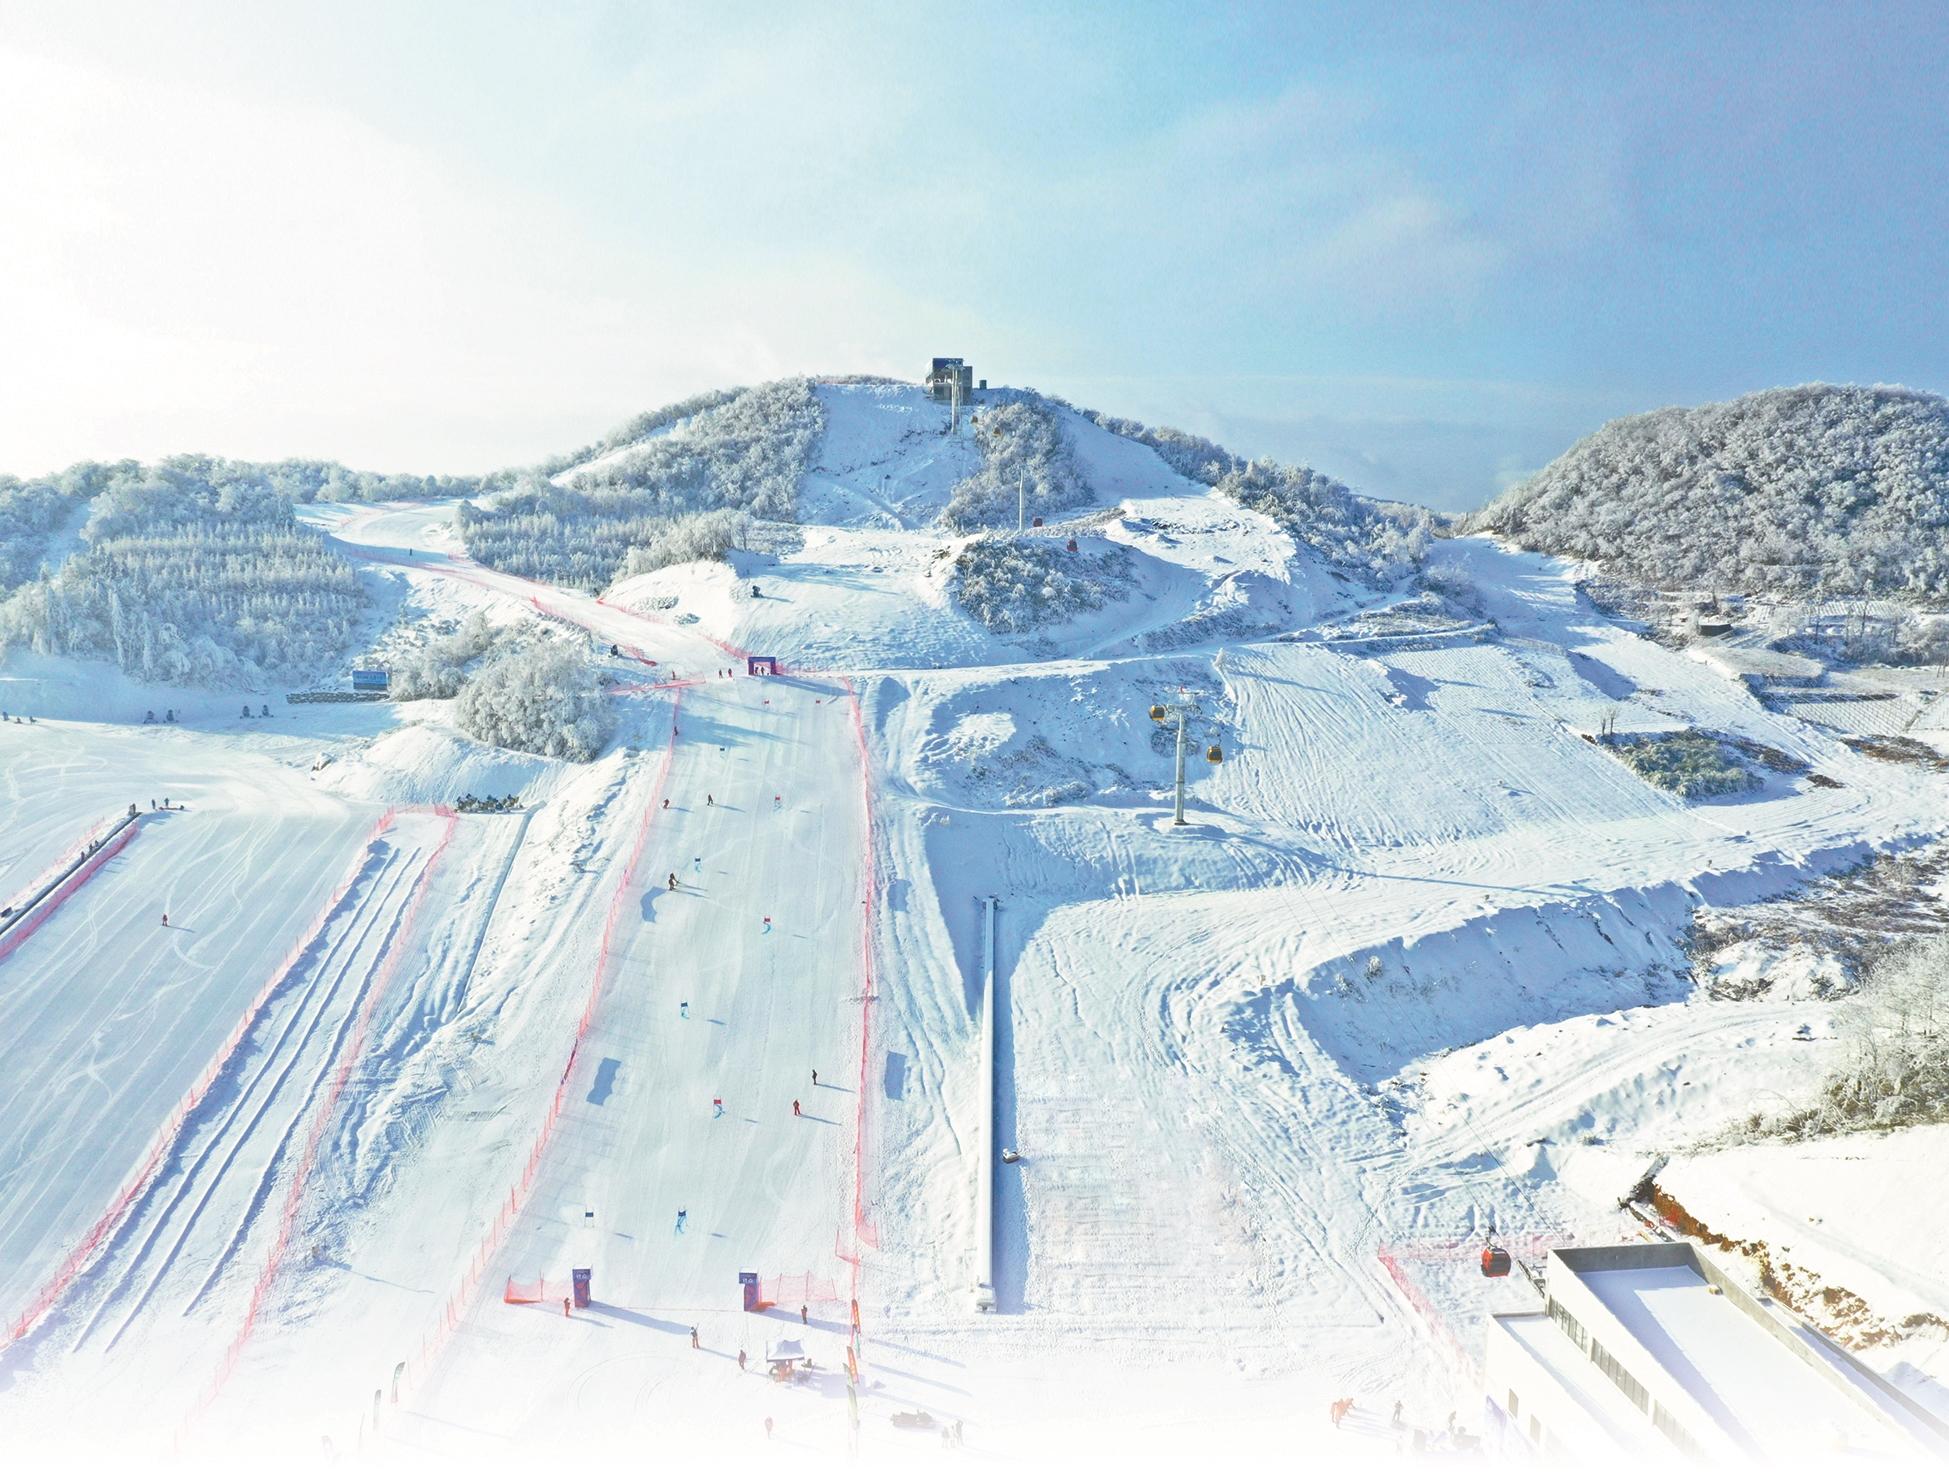 巴东县绿葱坡镇滑雪场图片